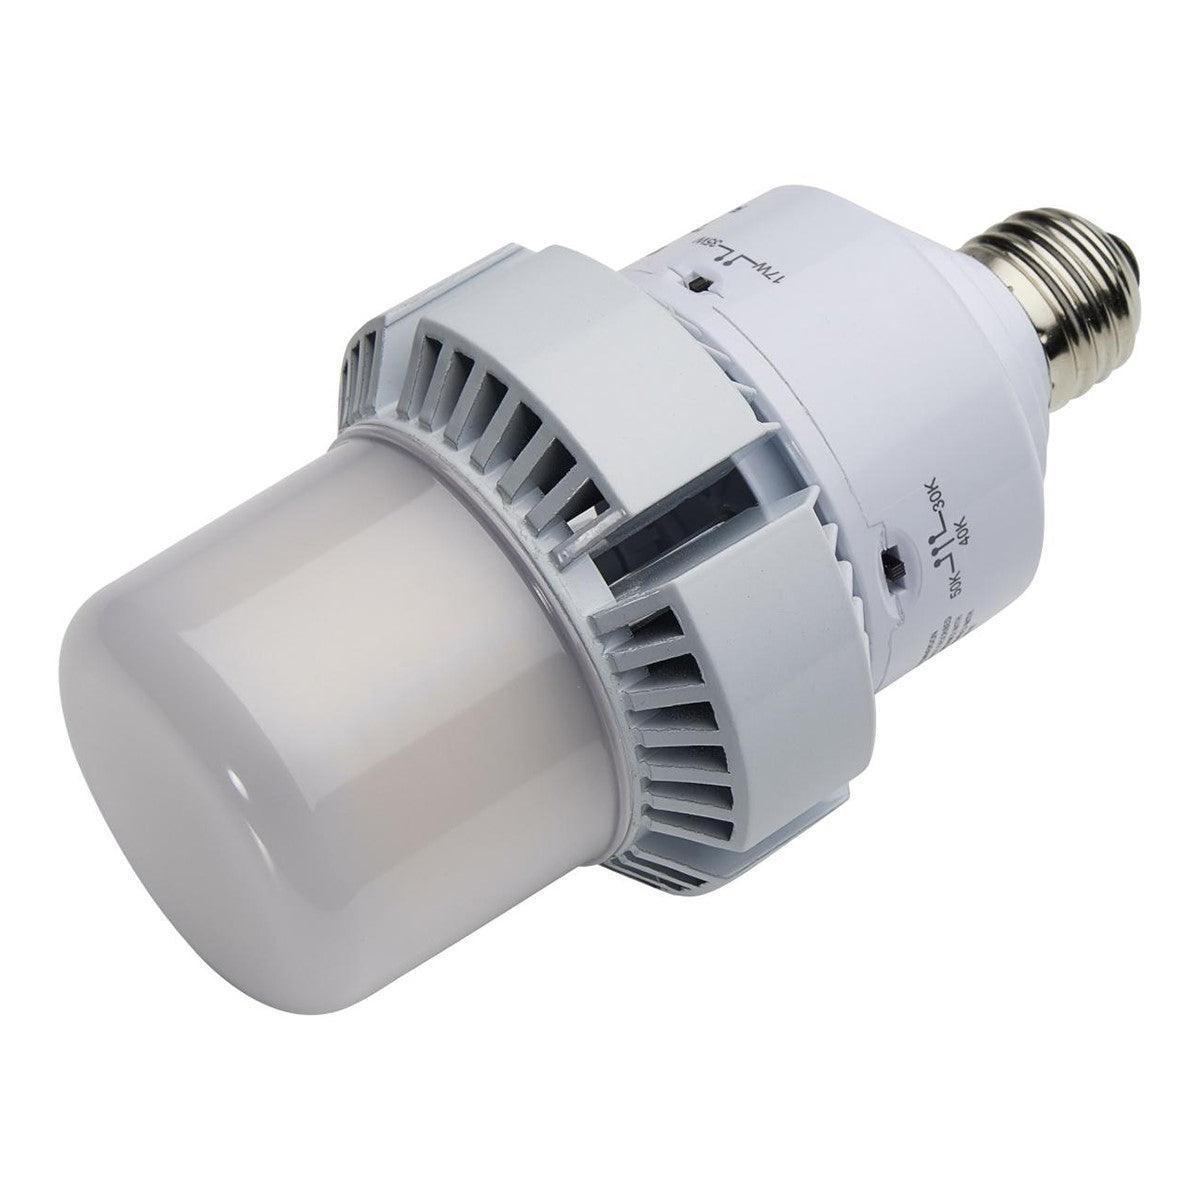 Retrofit LED Corn Bulb, 35W, 4550 Lumens, Selectable CCT, 30K/40K/50K, E26 Base, 120-277V - Bees Lighting